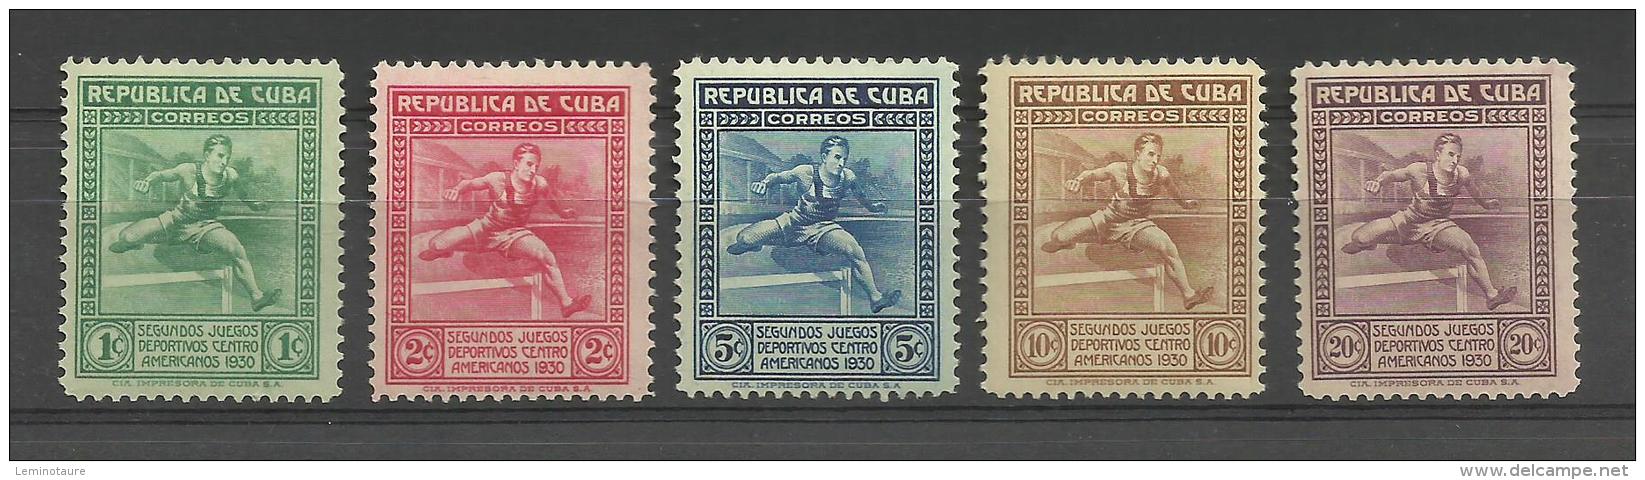 Yvert N° 207/11 -  Juegos Déportivos Centro Américanos 1930 # MH # - Neufs